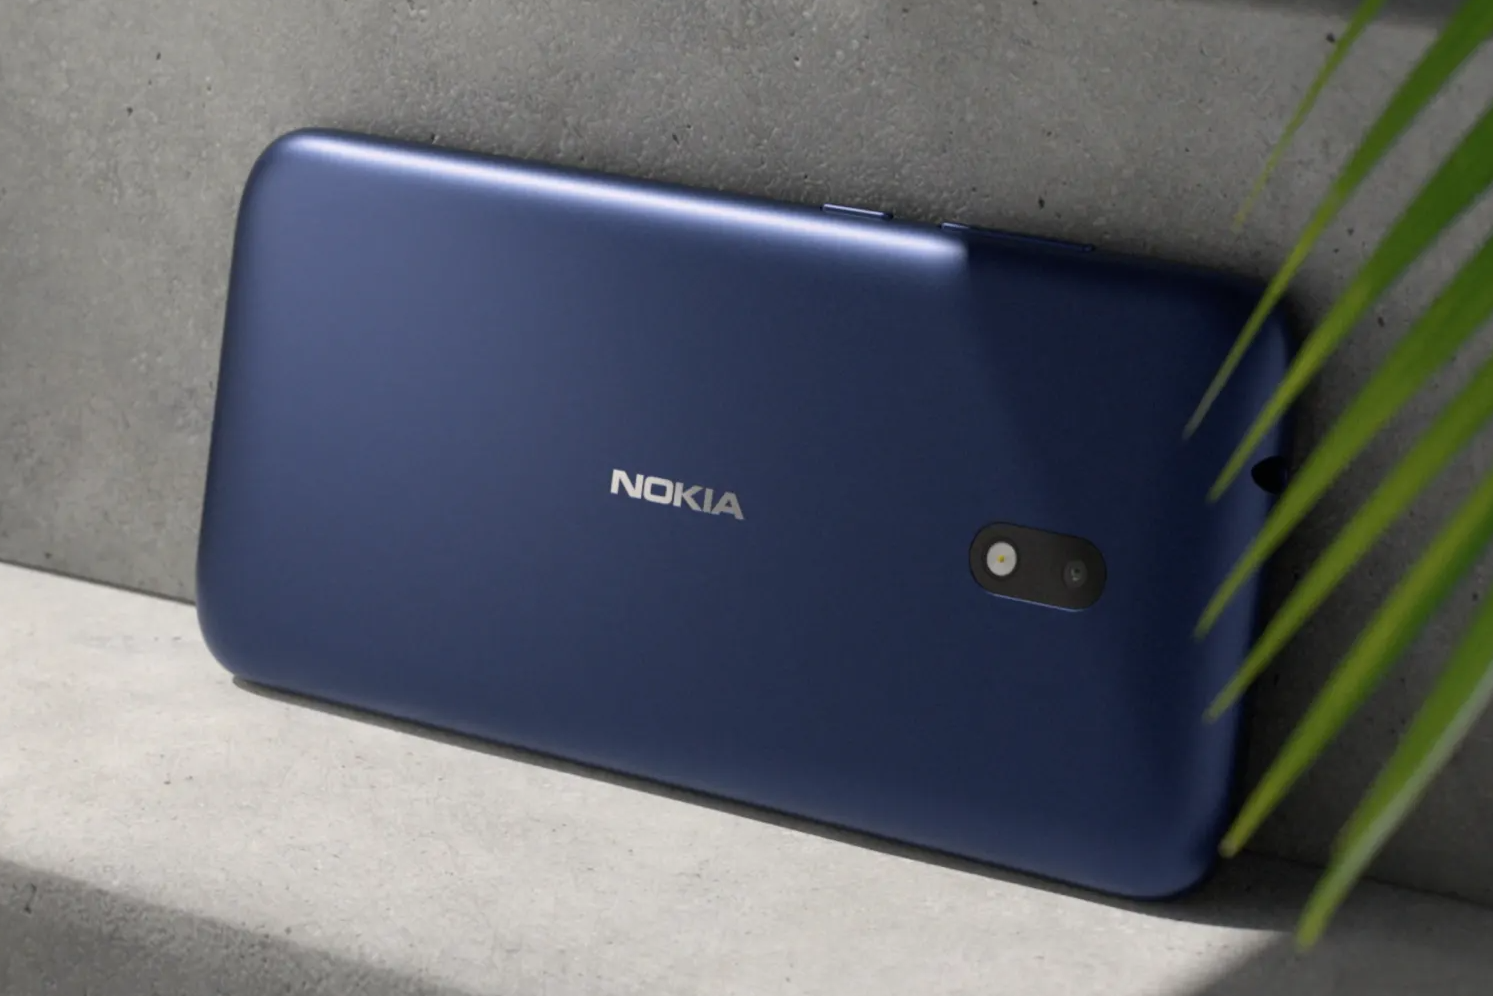 Lanzamiento de Nokia C1 Plus